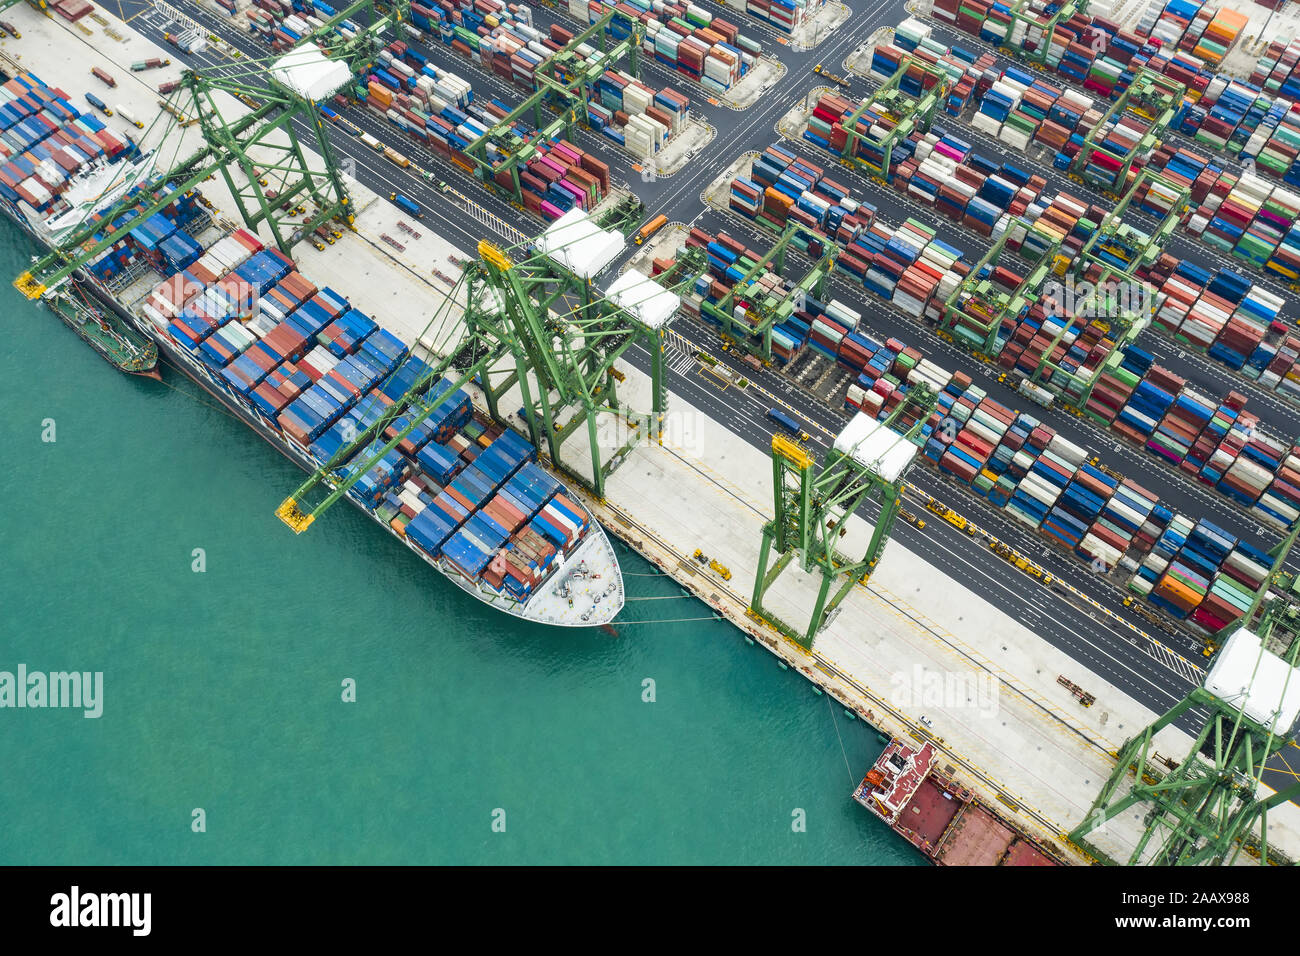 Vista da sopra, splendida vista aerea del porto di Singapore con centinaia di colorate contenitori pronti per essere sul carico di navi. Foto Stock